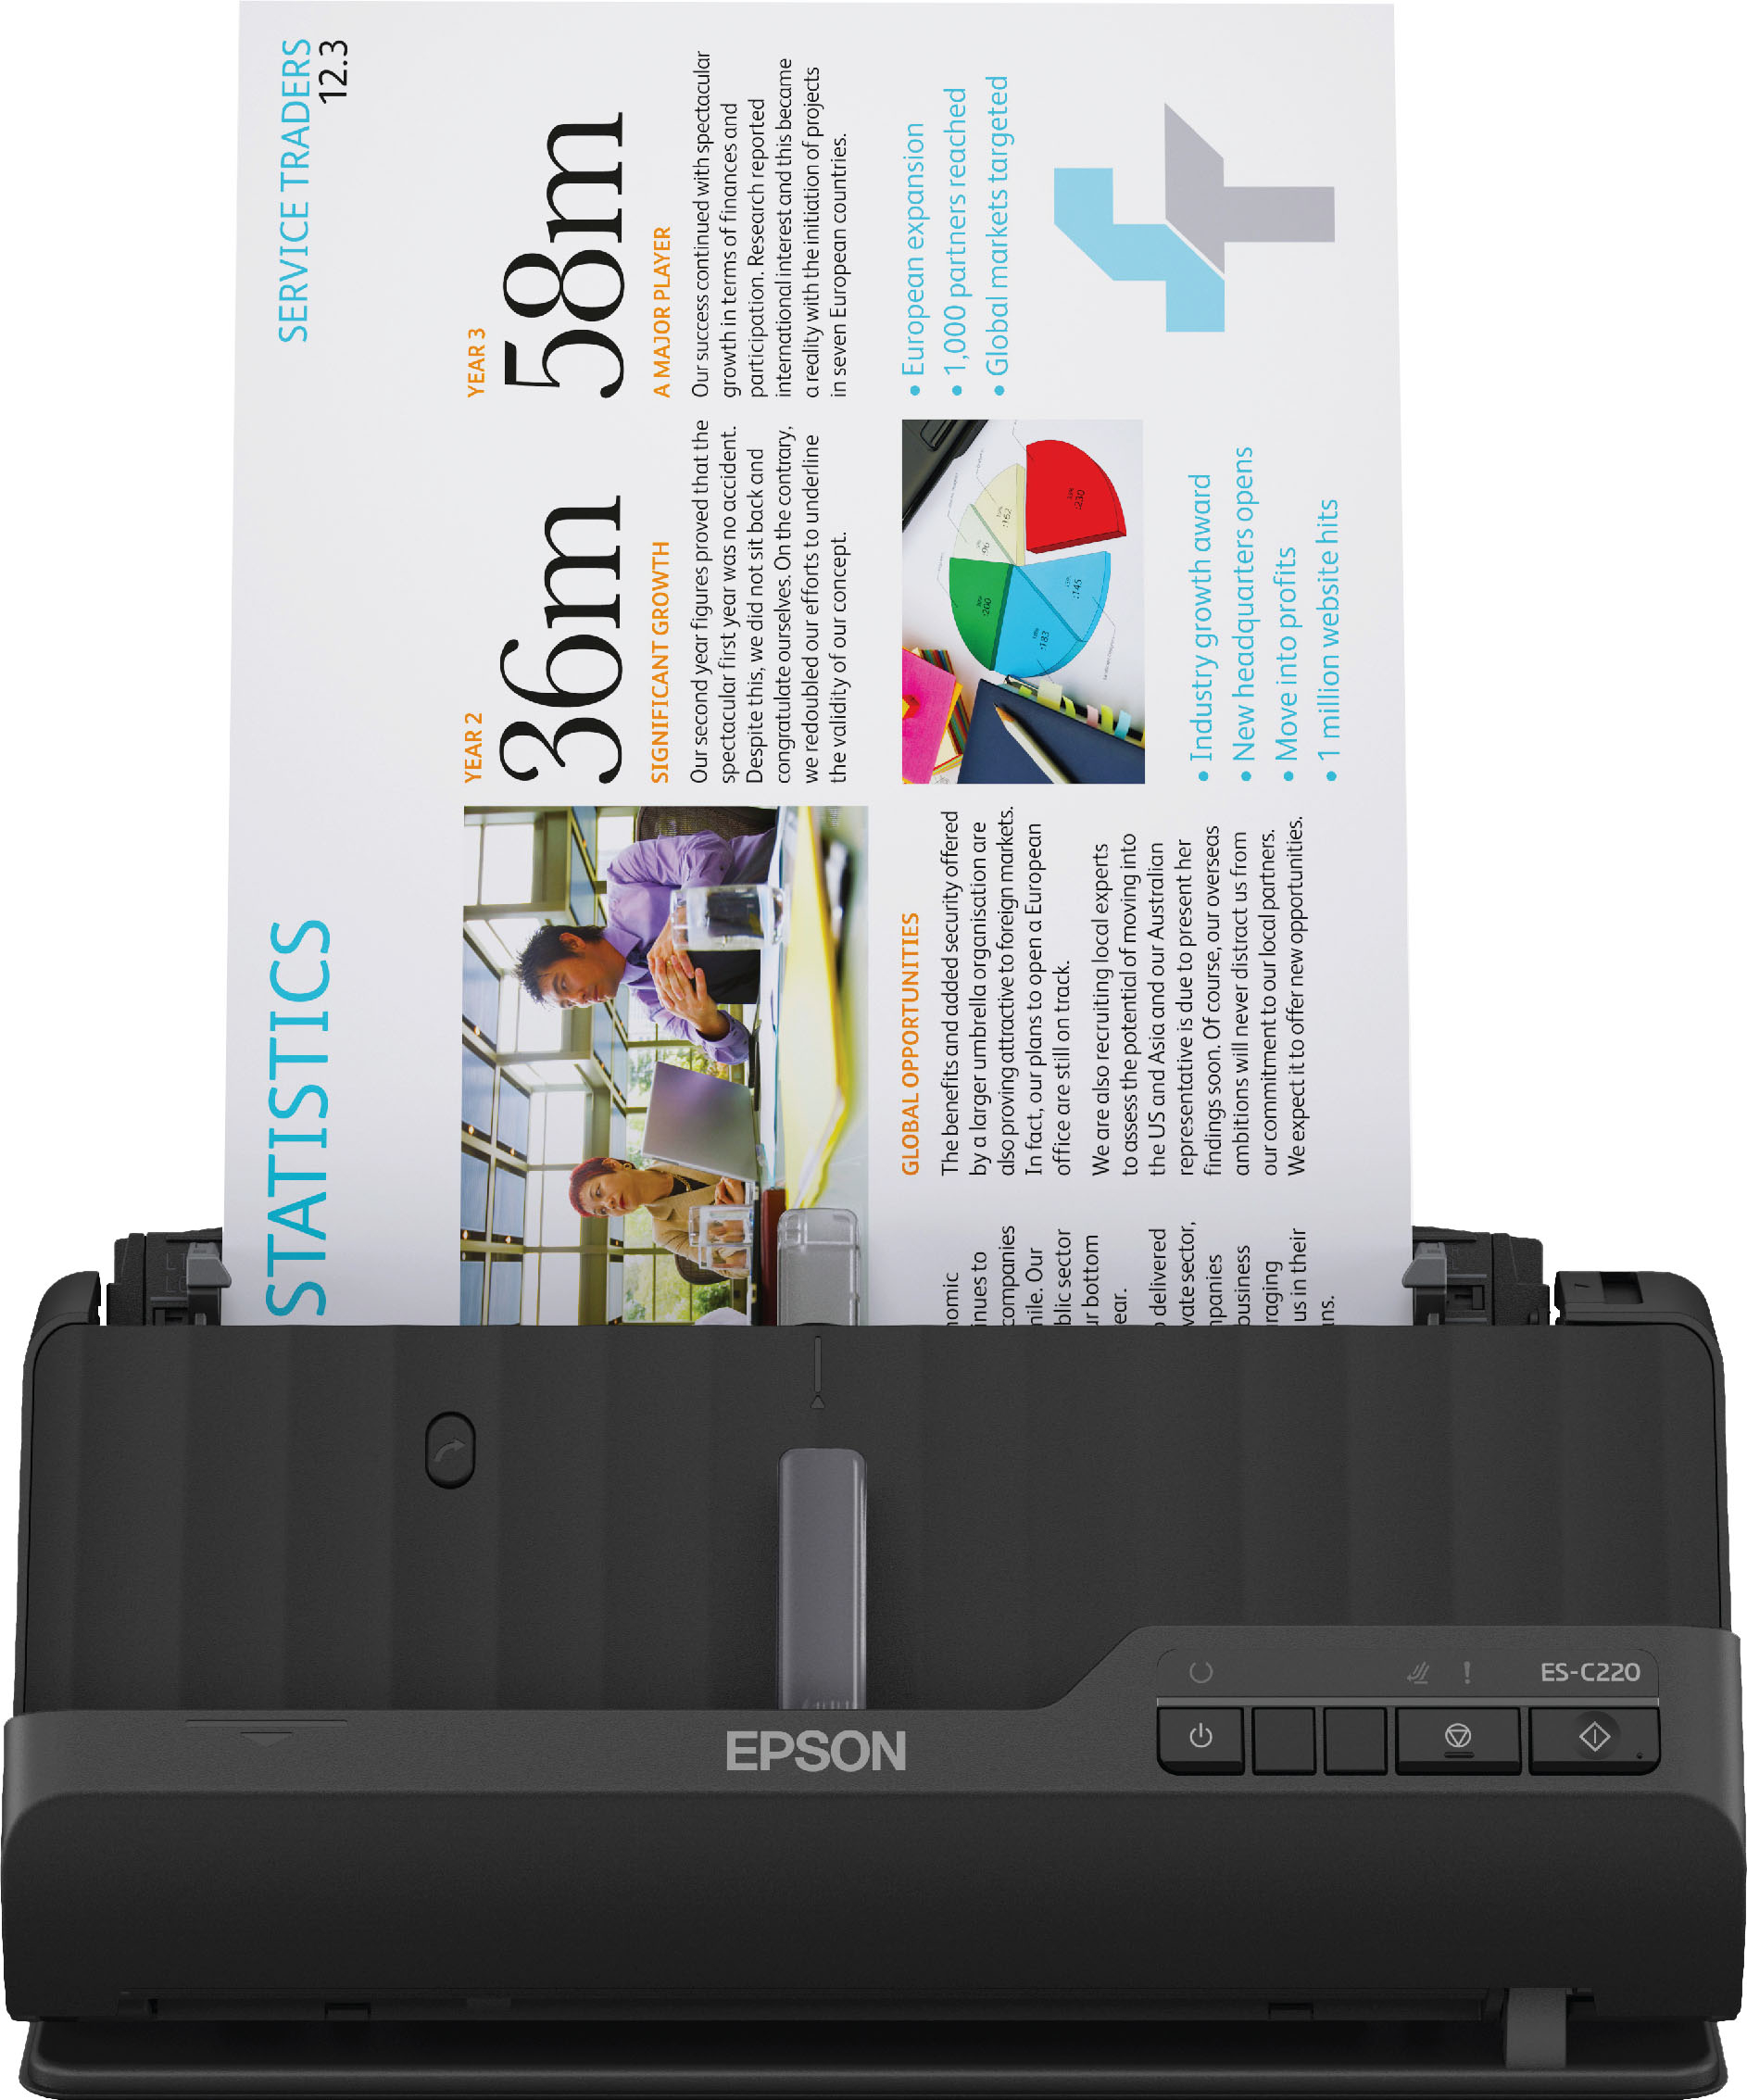 Epson WorkForce ES-C220 Compact Desktop Document Scanner Black B11B272202 -  Best Buy